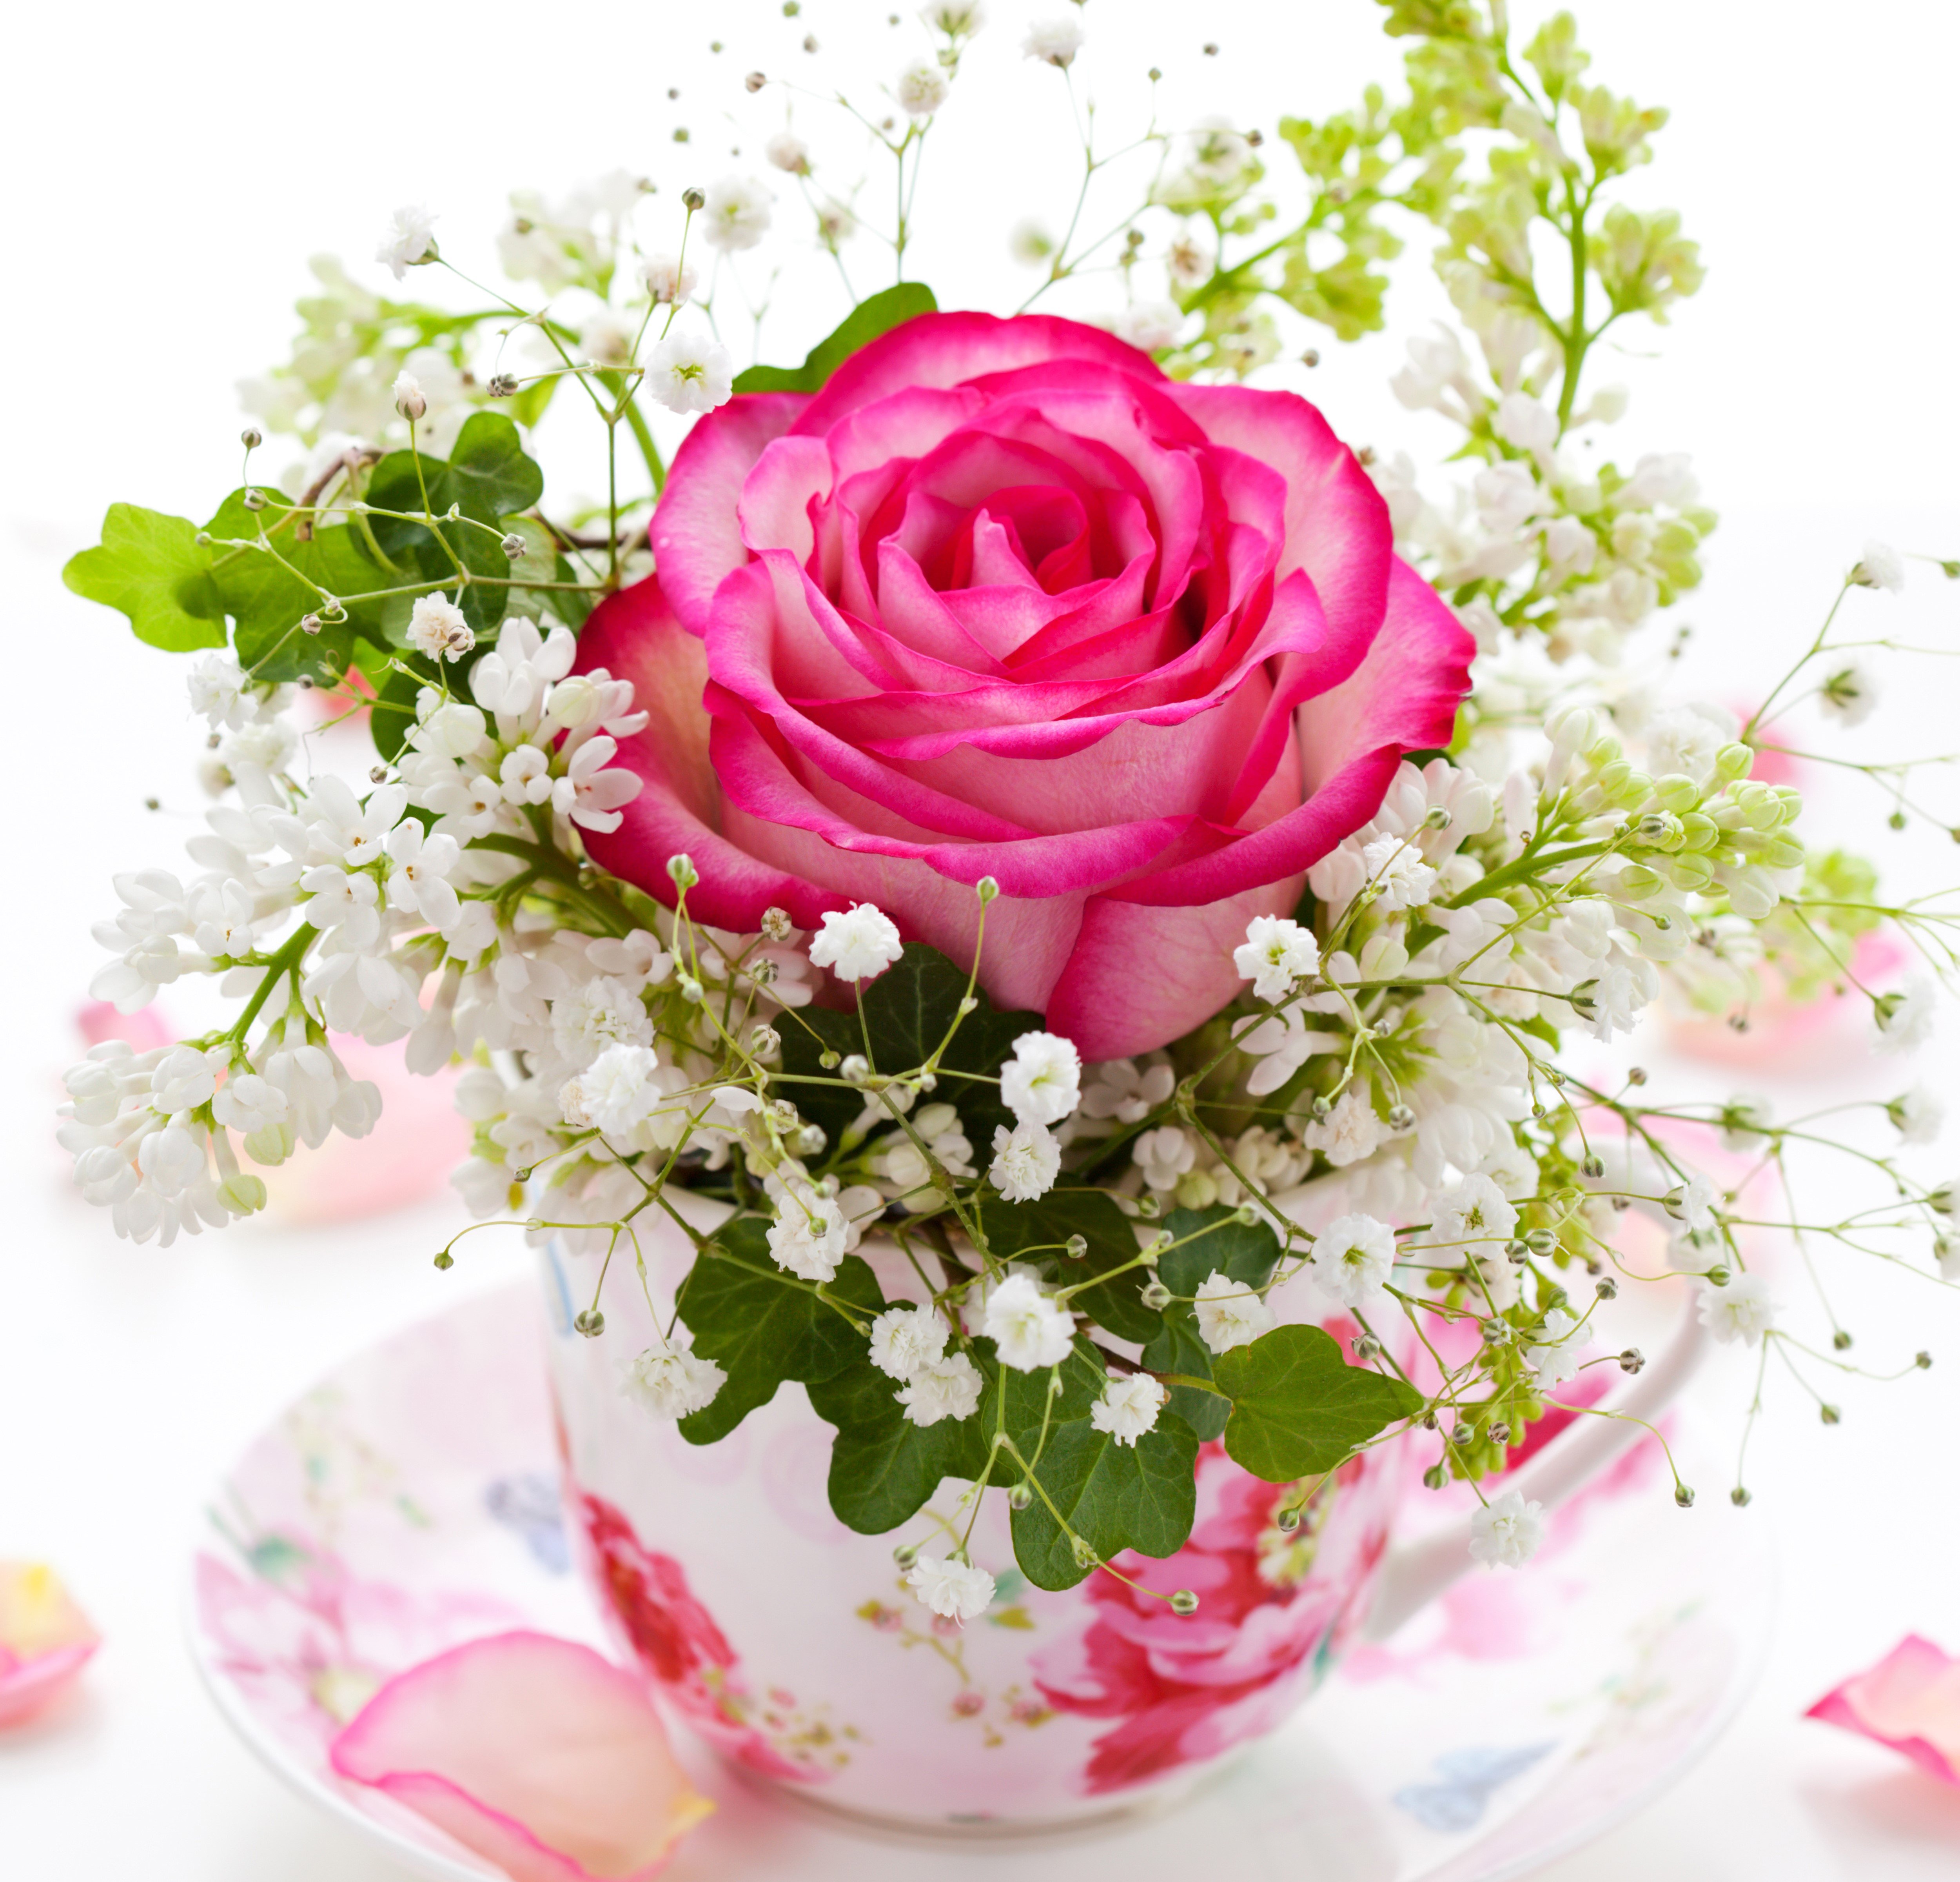 Прекрасного утра с цветами. Красивые цветы в вазе. Красивый букет в вазе. Цветы в кружке. Открытка цветы.